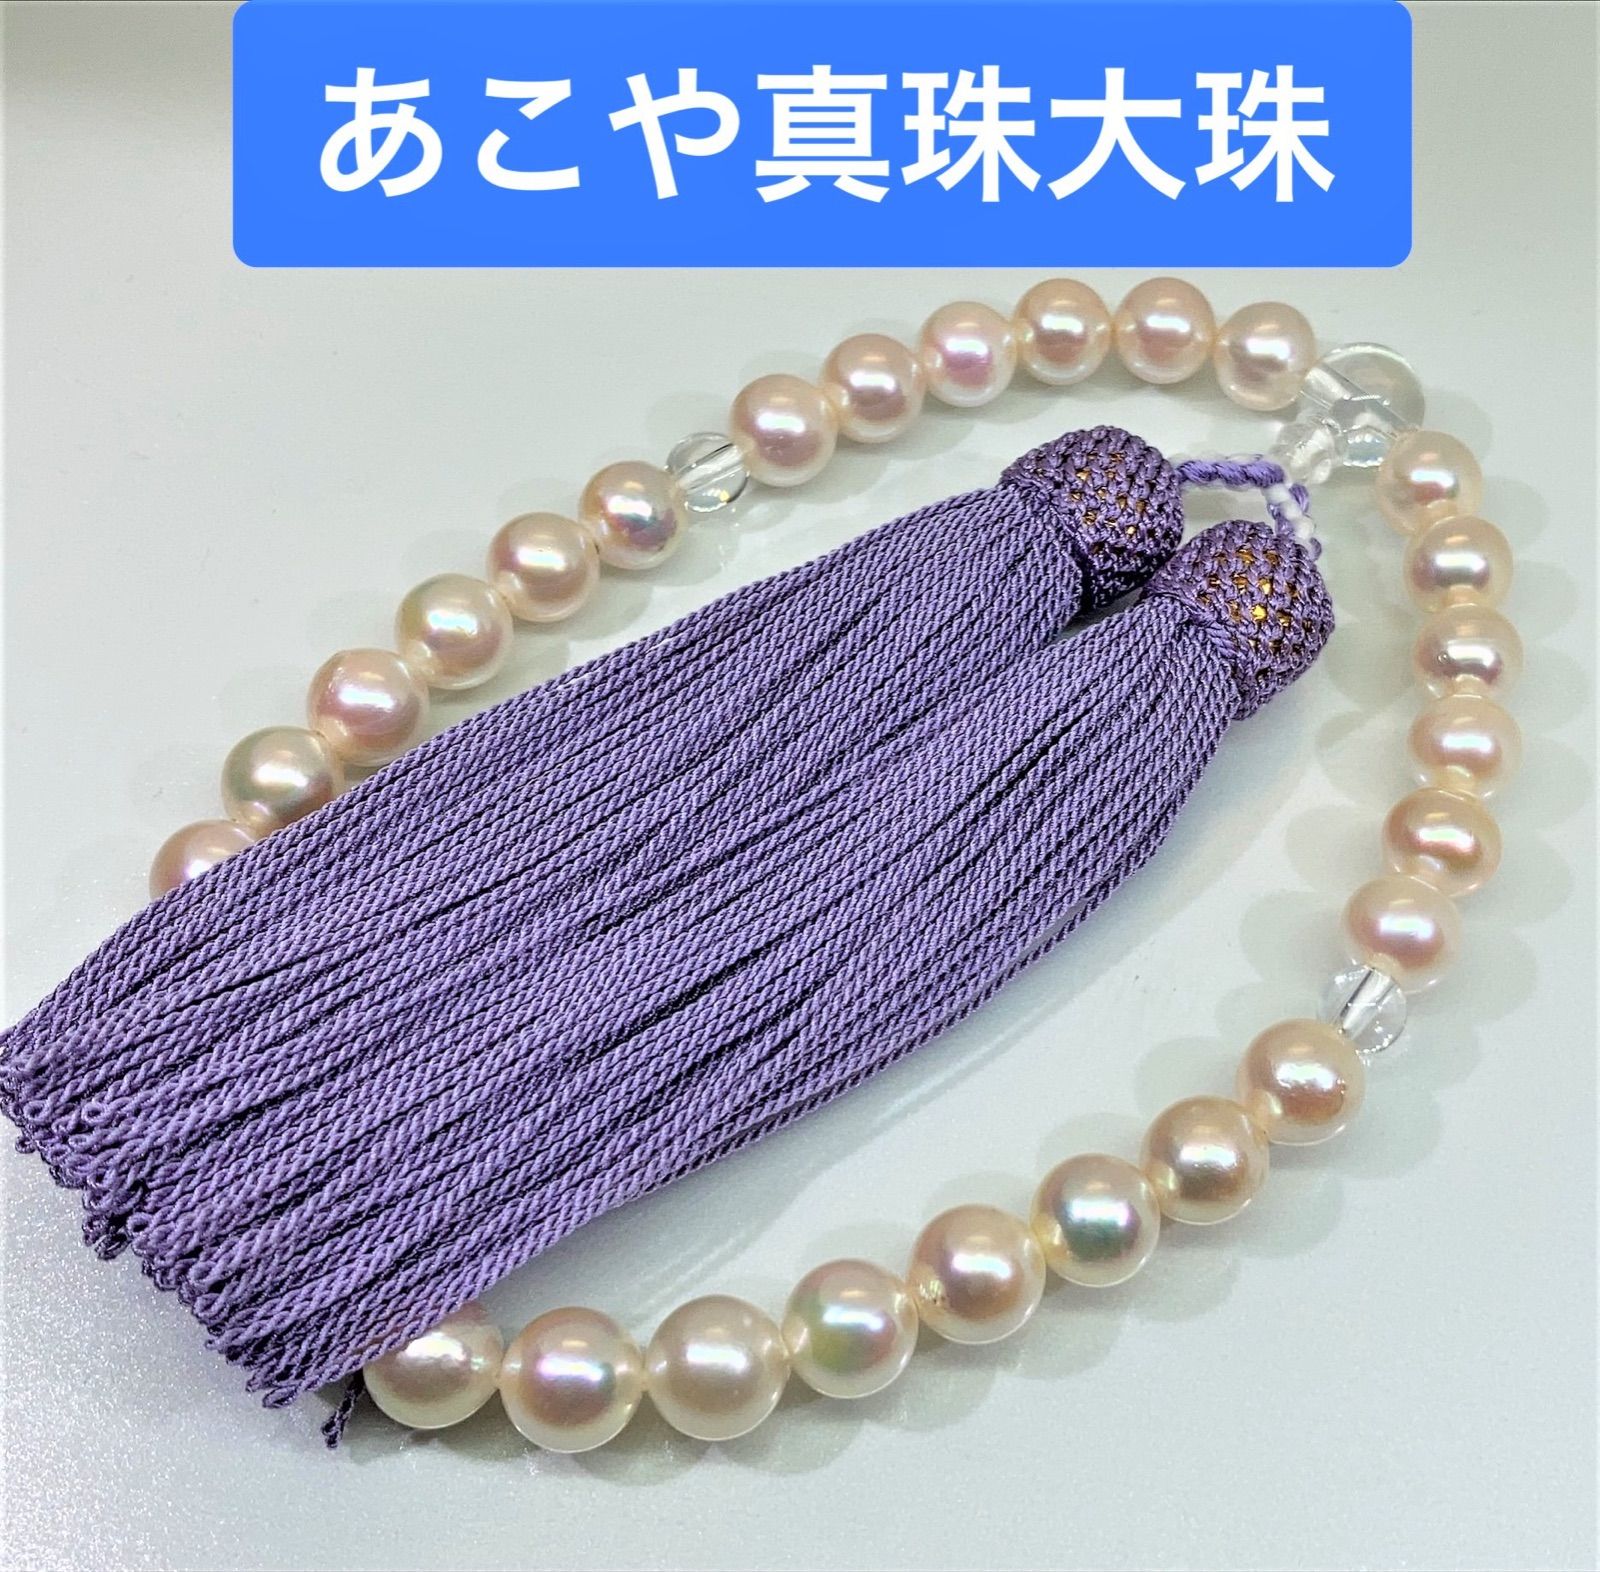 あこや真珠 数珠 念珠 大珠 全宗派使用可能 保証&手引き付き - メルカリ